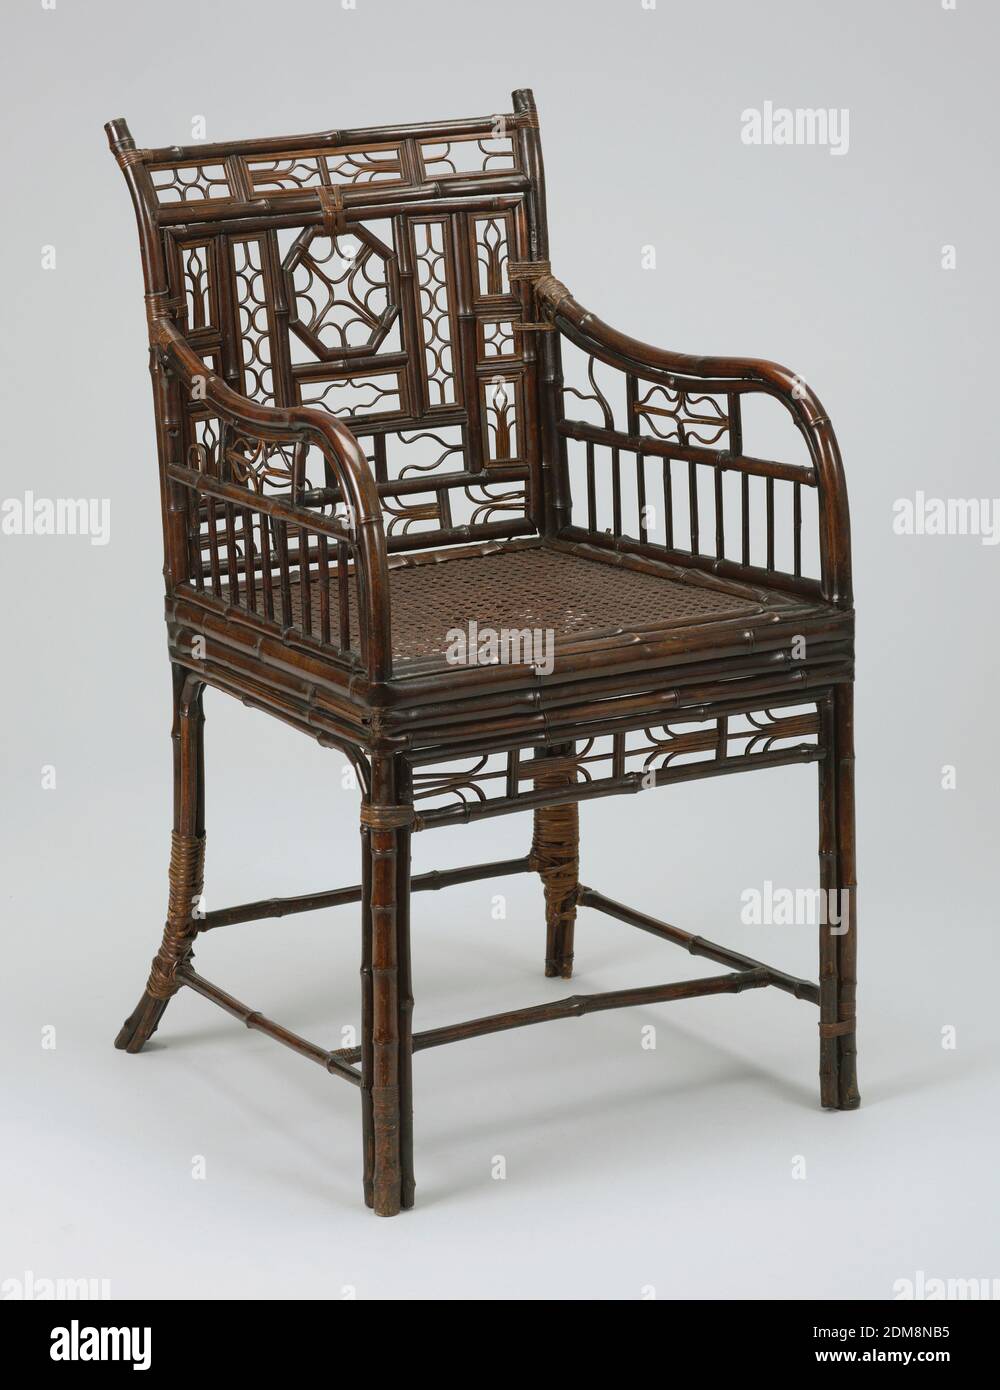 Exportation chinoise fauteuil, bambou, chantage, fauteuil, carré en plan,  entièrement construit en bambou, sauf pour siège en forme de caned. Dos  conçu avec de petites ouvertures rectangulaires, chacune remplie de petit  motif